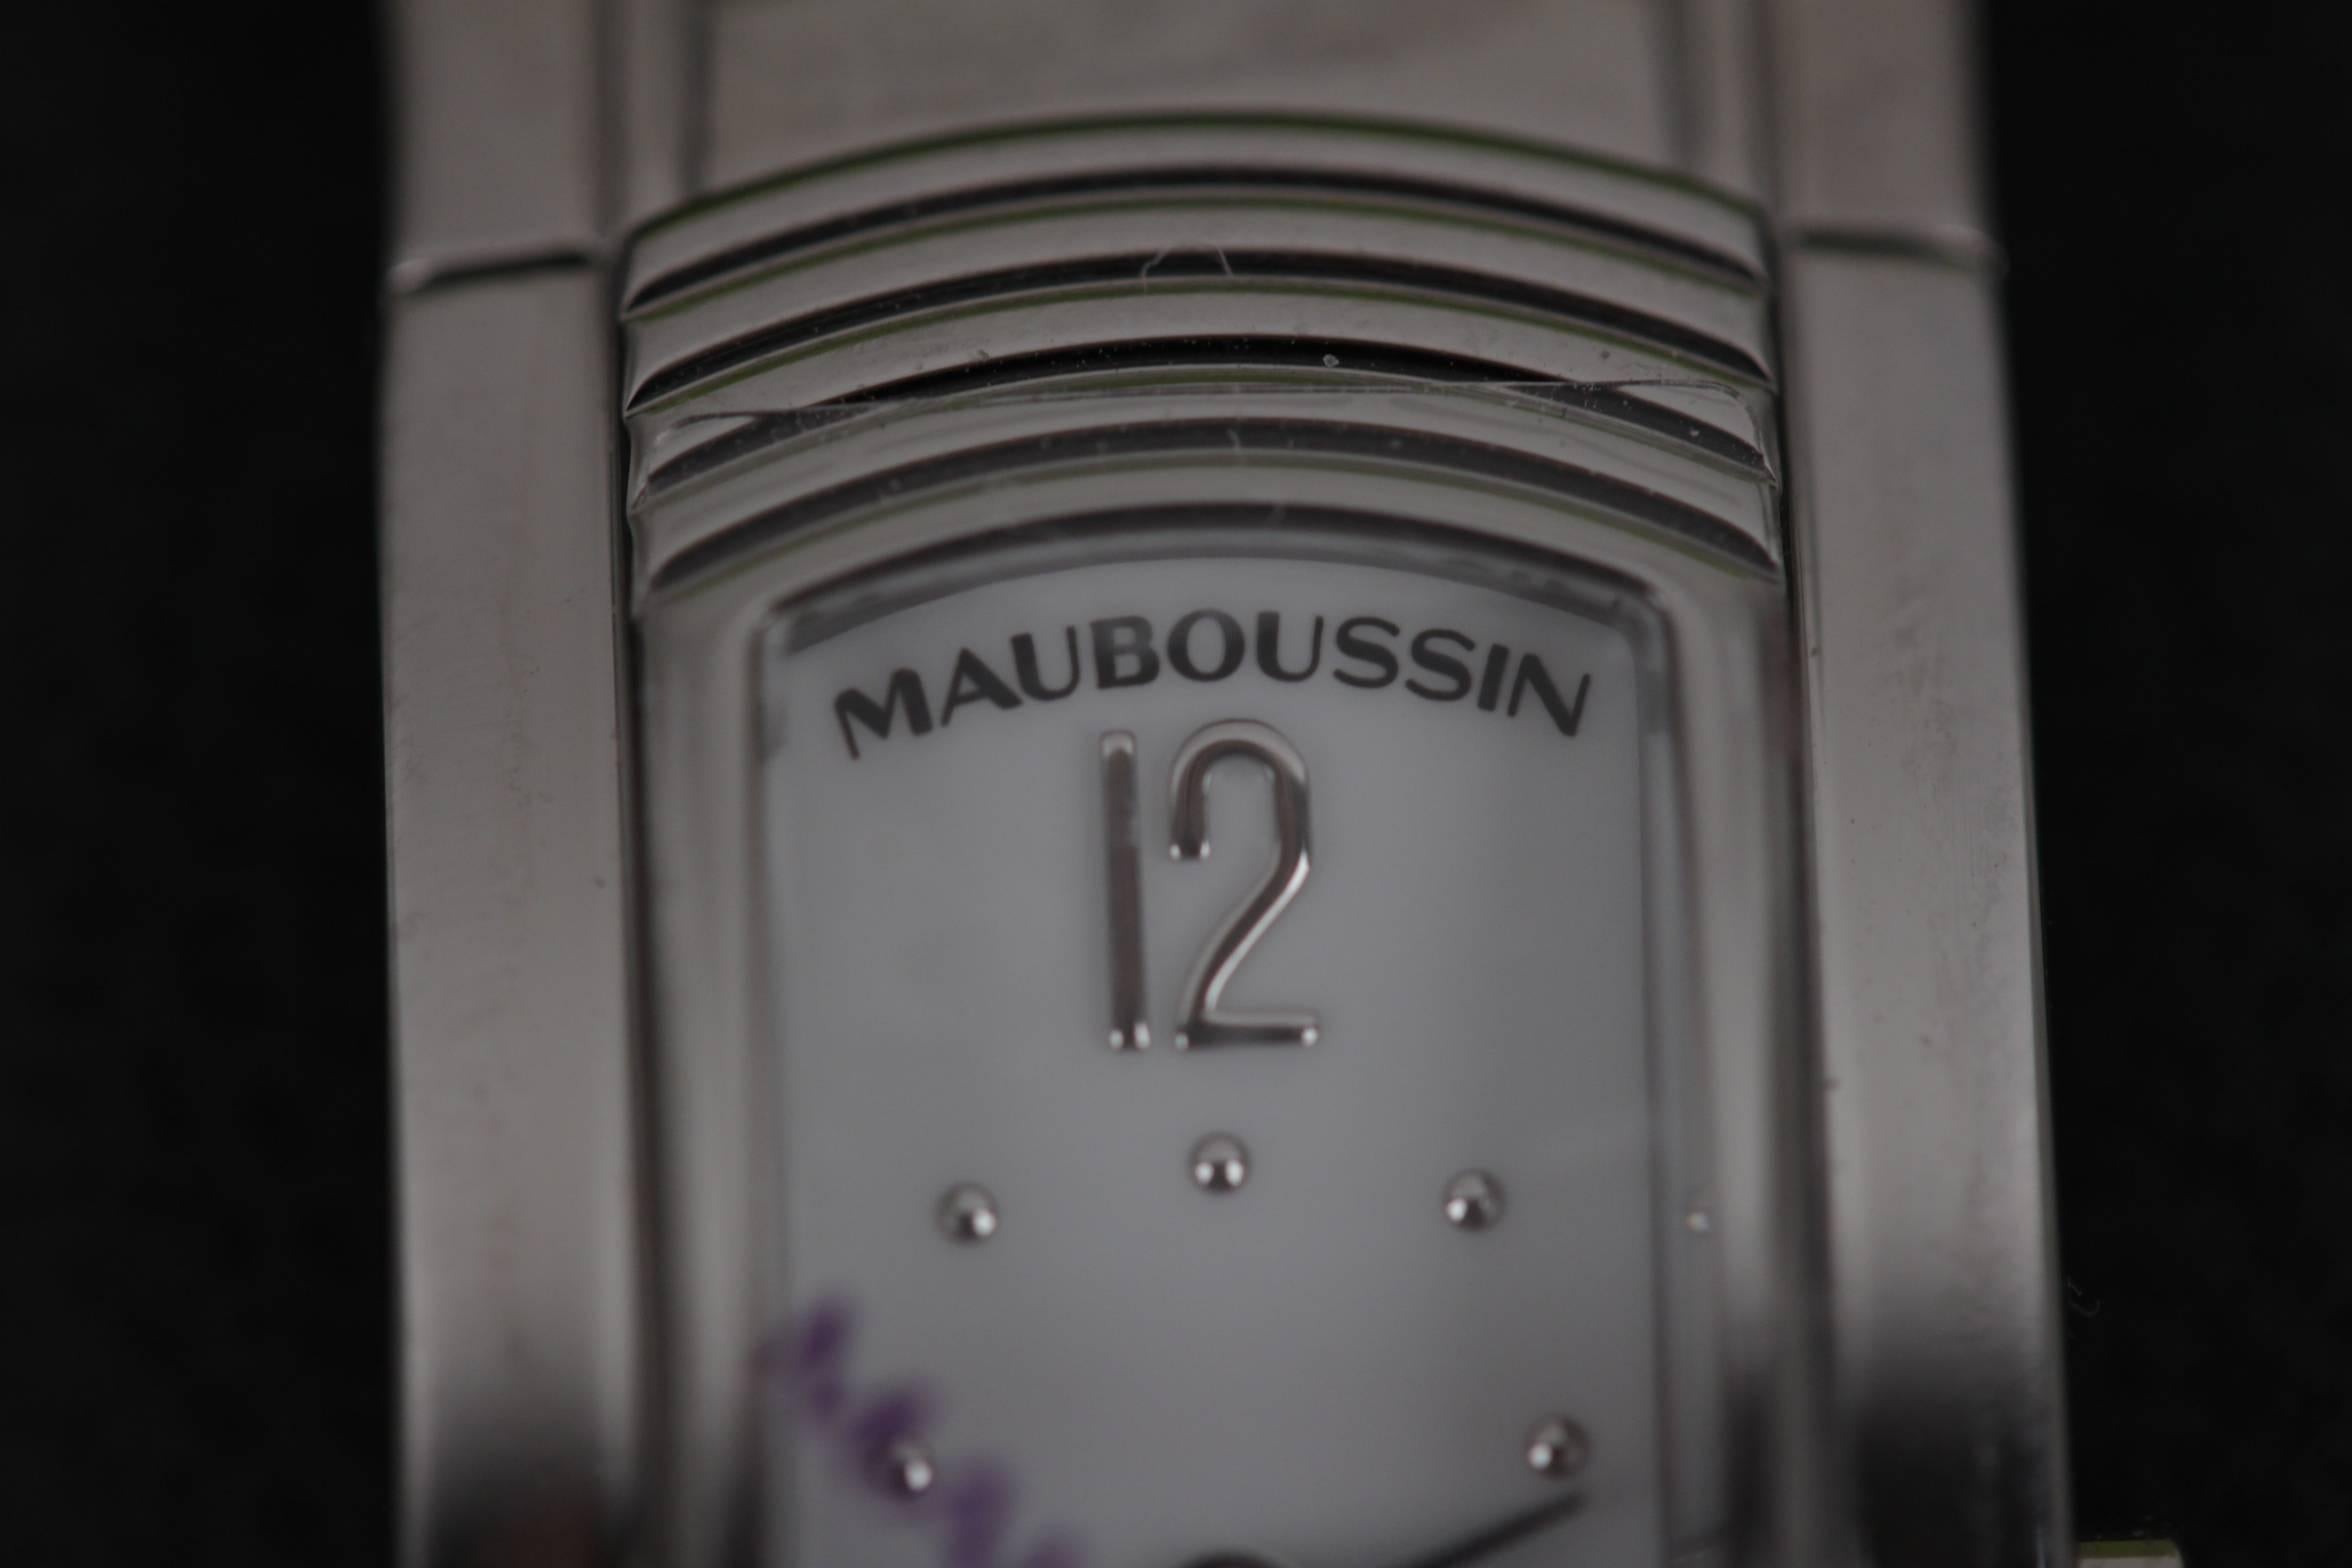 MAUBOUSSIN Stainless Steel LADY M WRIST WATCH Purple GrosGrain Bracelet w/ BOX 1